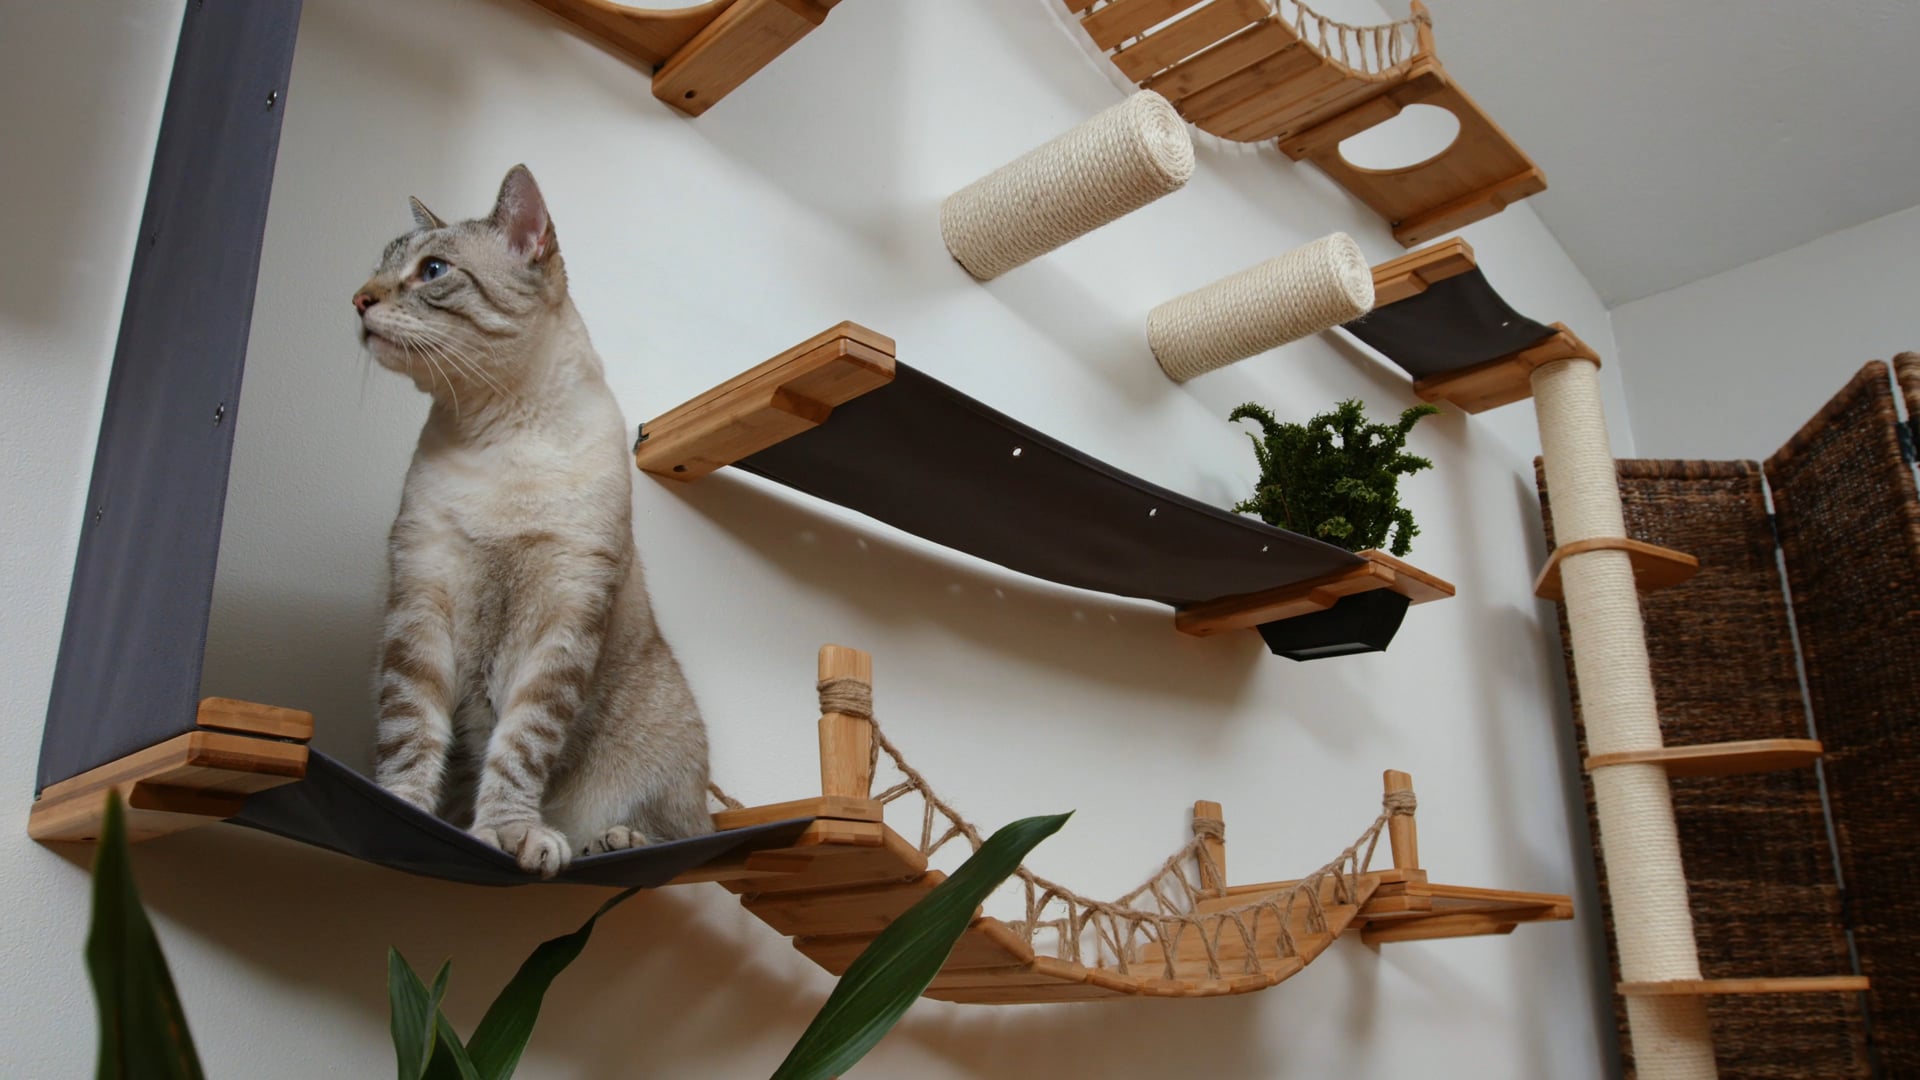 Catastrophic Creations - "Cat Furniture""